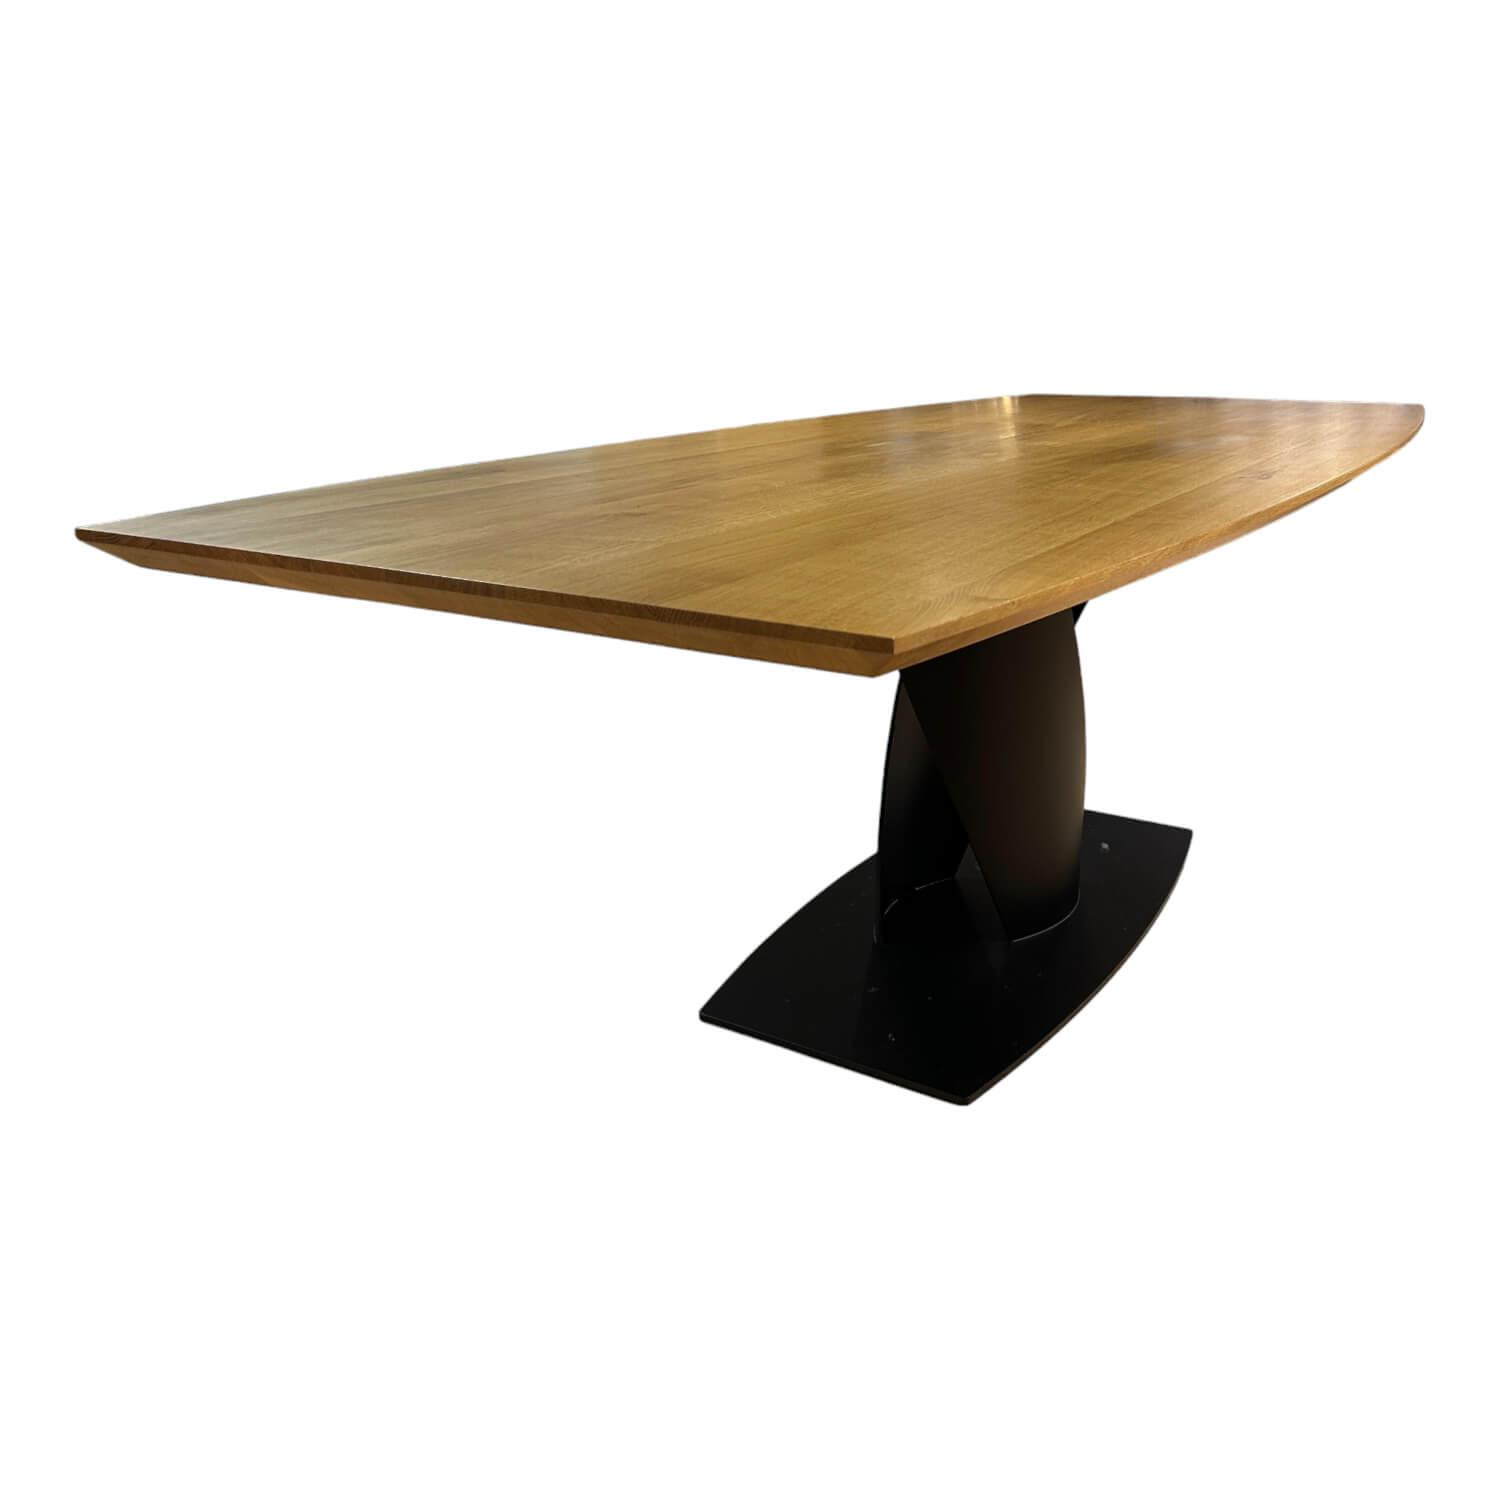 Esstisch Mono Tischplatte Eiche Massiv Natur Geölt Rustikal Zentralfuß Kernholz Bodenplatte Stahl Schwarz Strukturiert